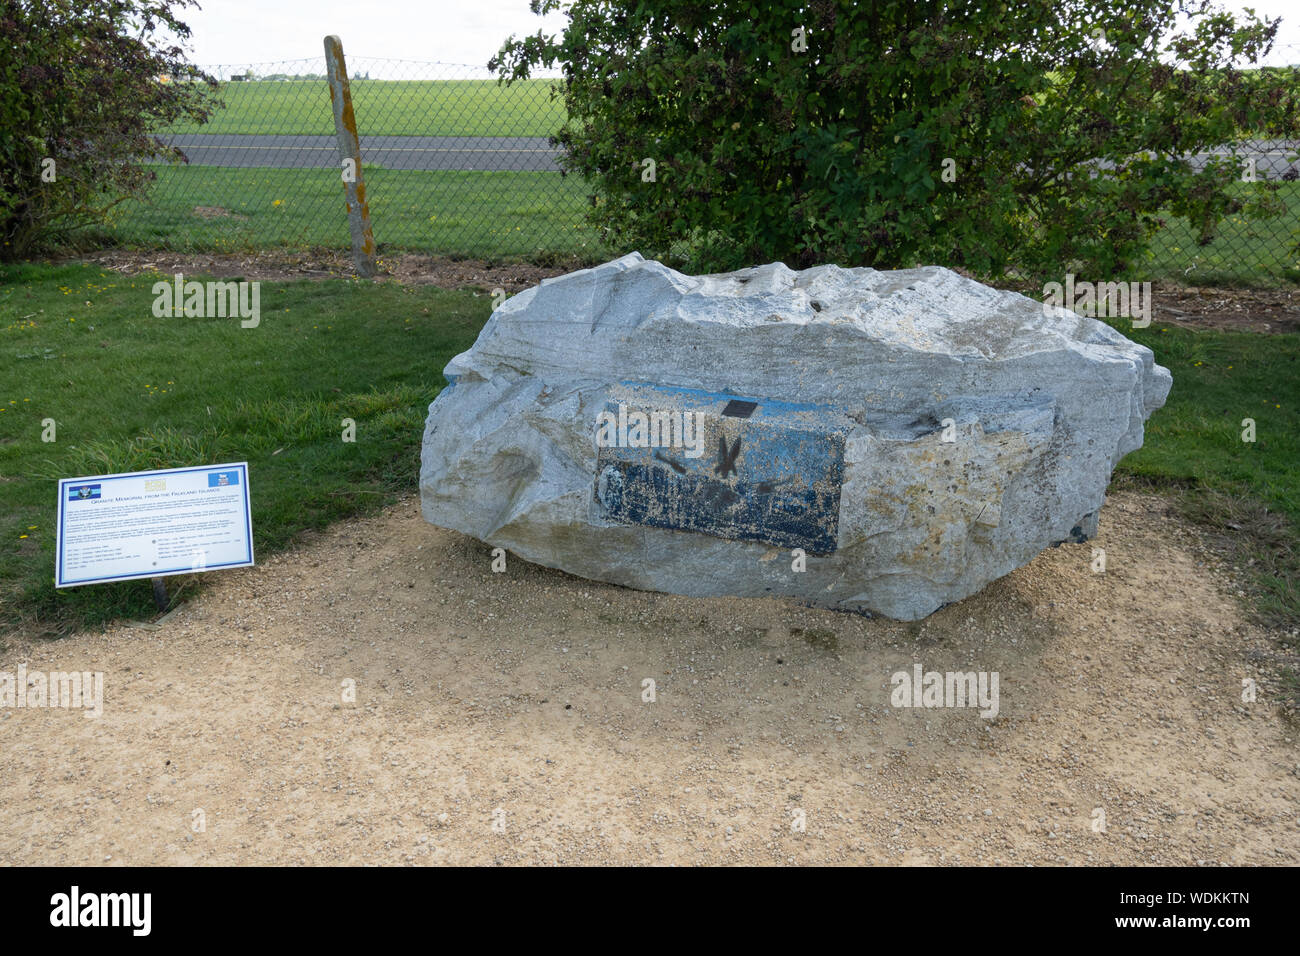 L'esercito battenti Museum a Middle Wallop airfield, Hampshire, Regno Unito - un memoriale di granito dalle Isole Falkland (Malvine Guerra) sul display esterno Foto Stock